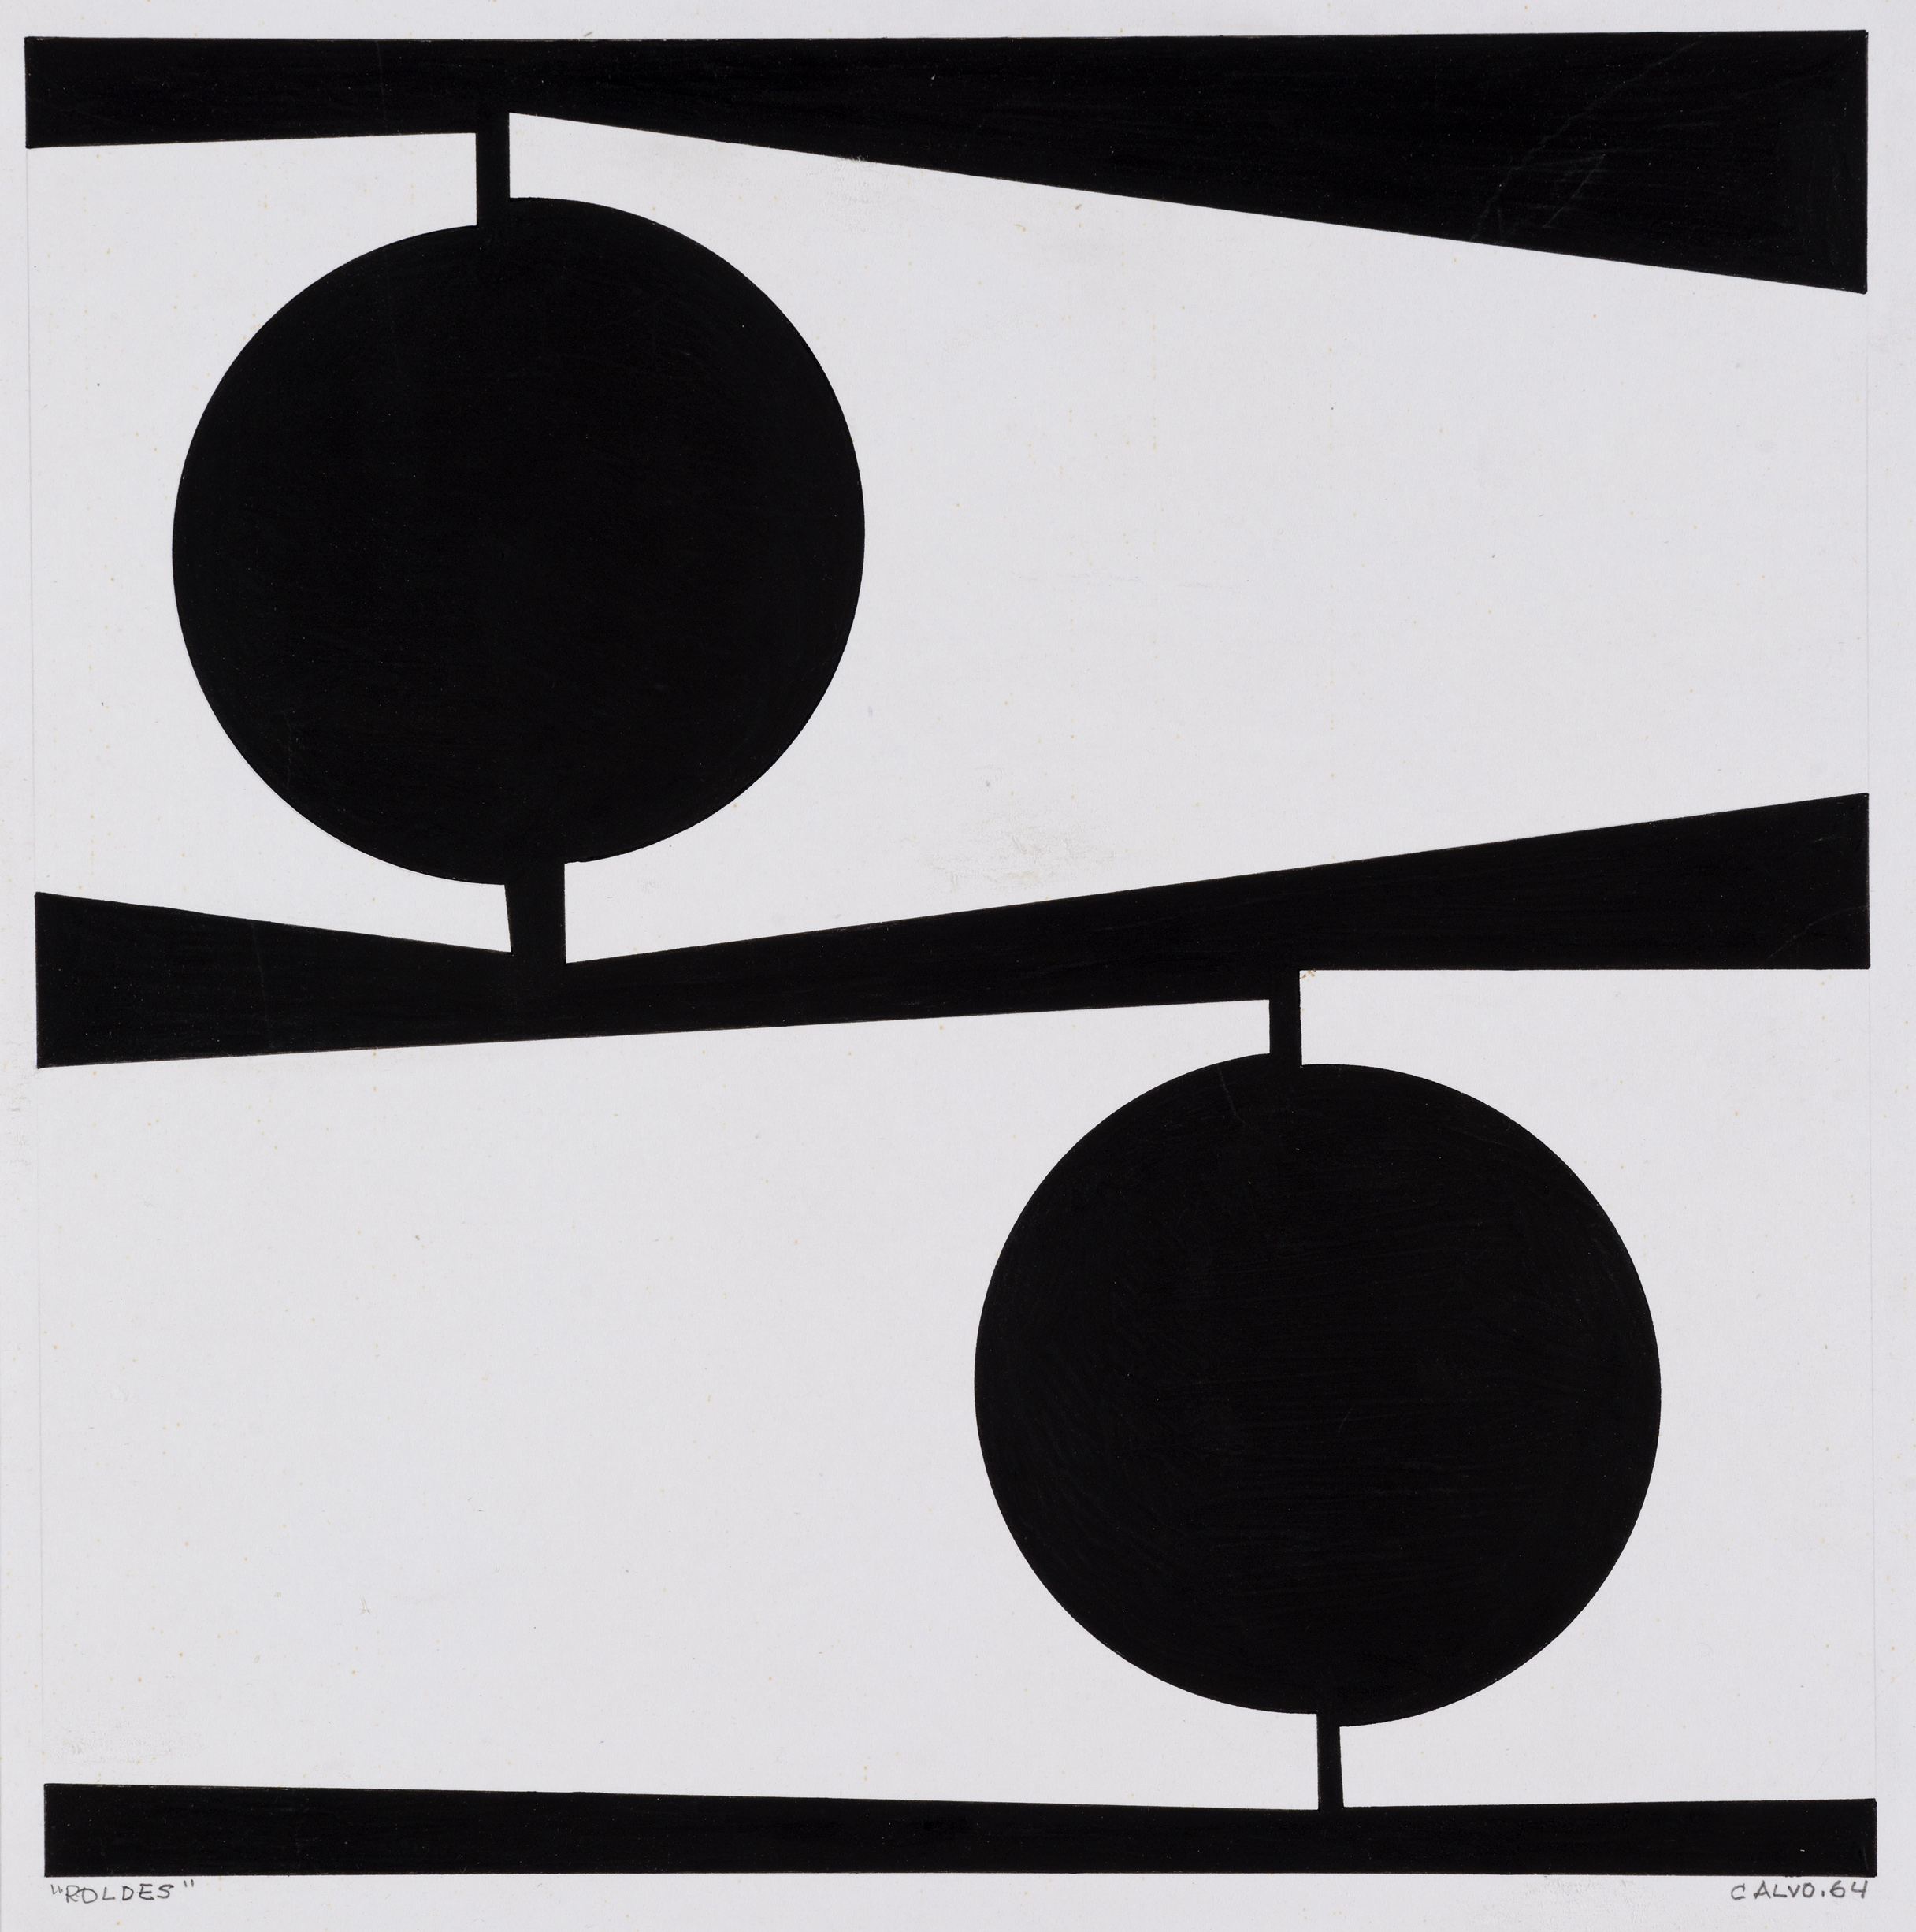 La obra en blanco y negro de Manuel Calvo podrá verse en la Galería José de la Mano